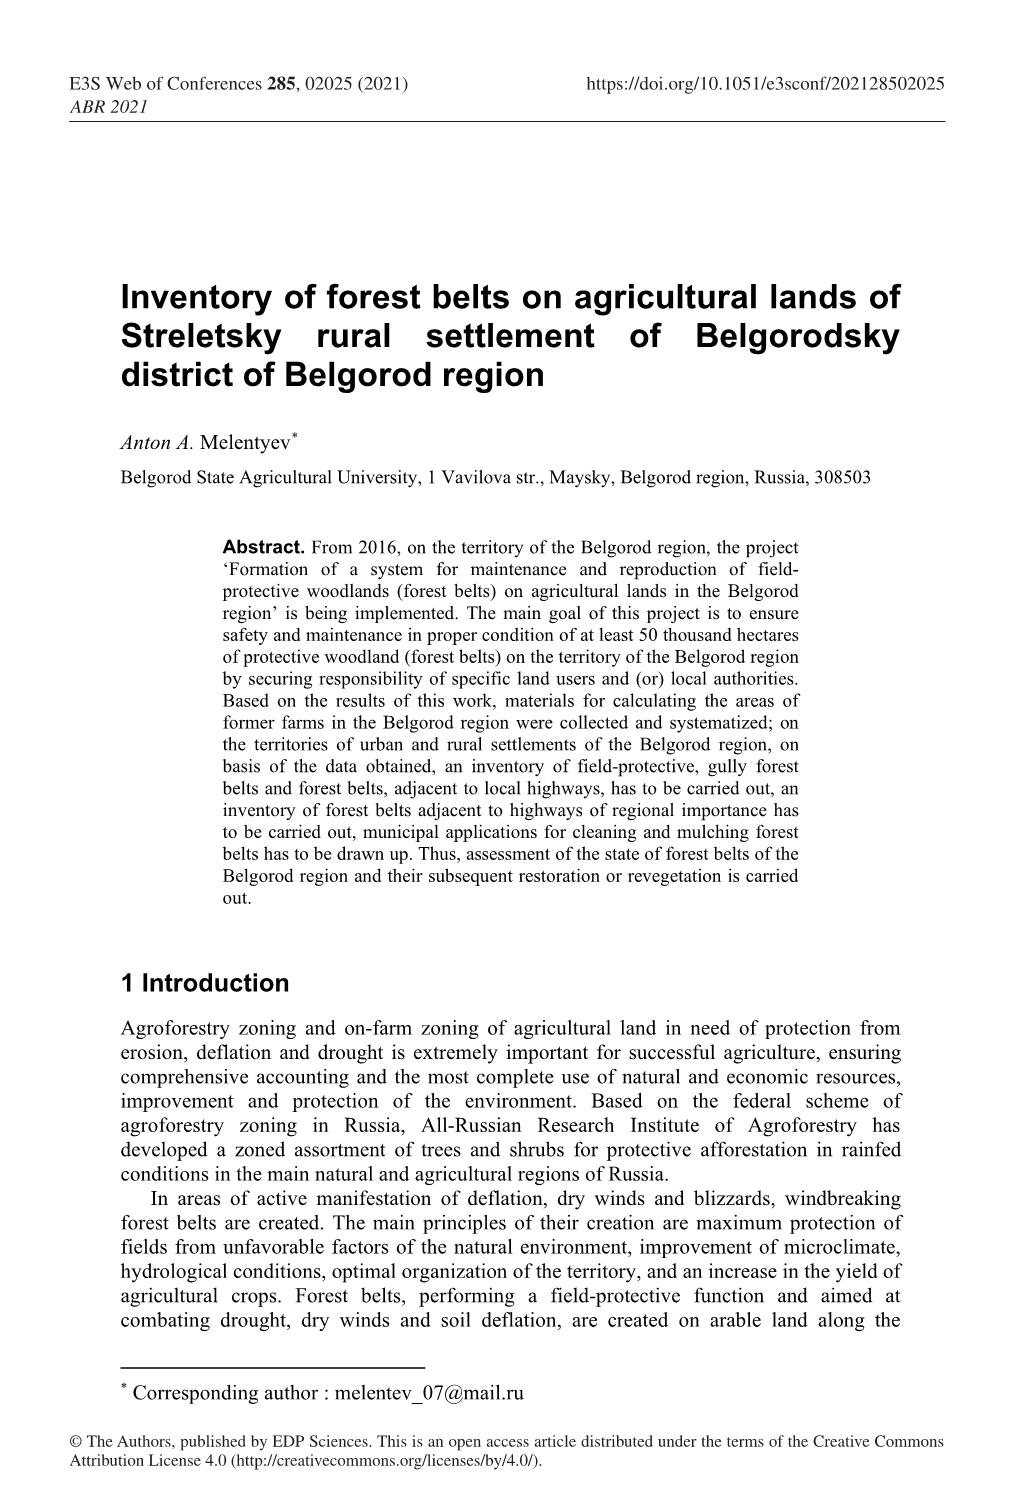 Inventory of Forest Belts on Agricultural Lands of Streletsky Rural Settlement of Belgorodsky District of Belgorod Region